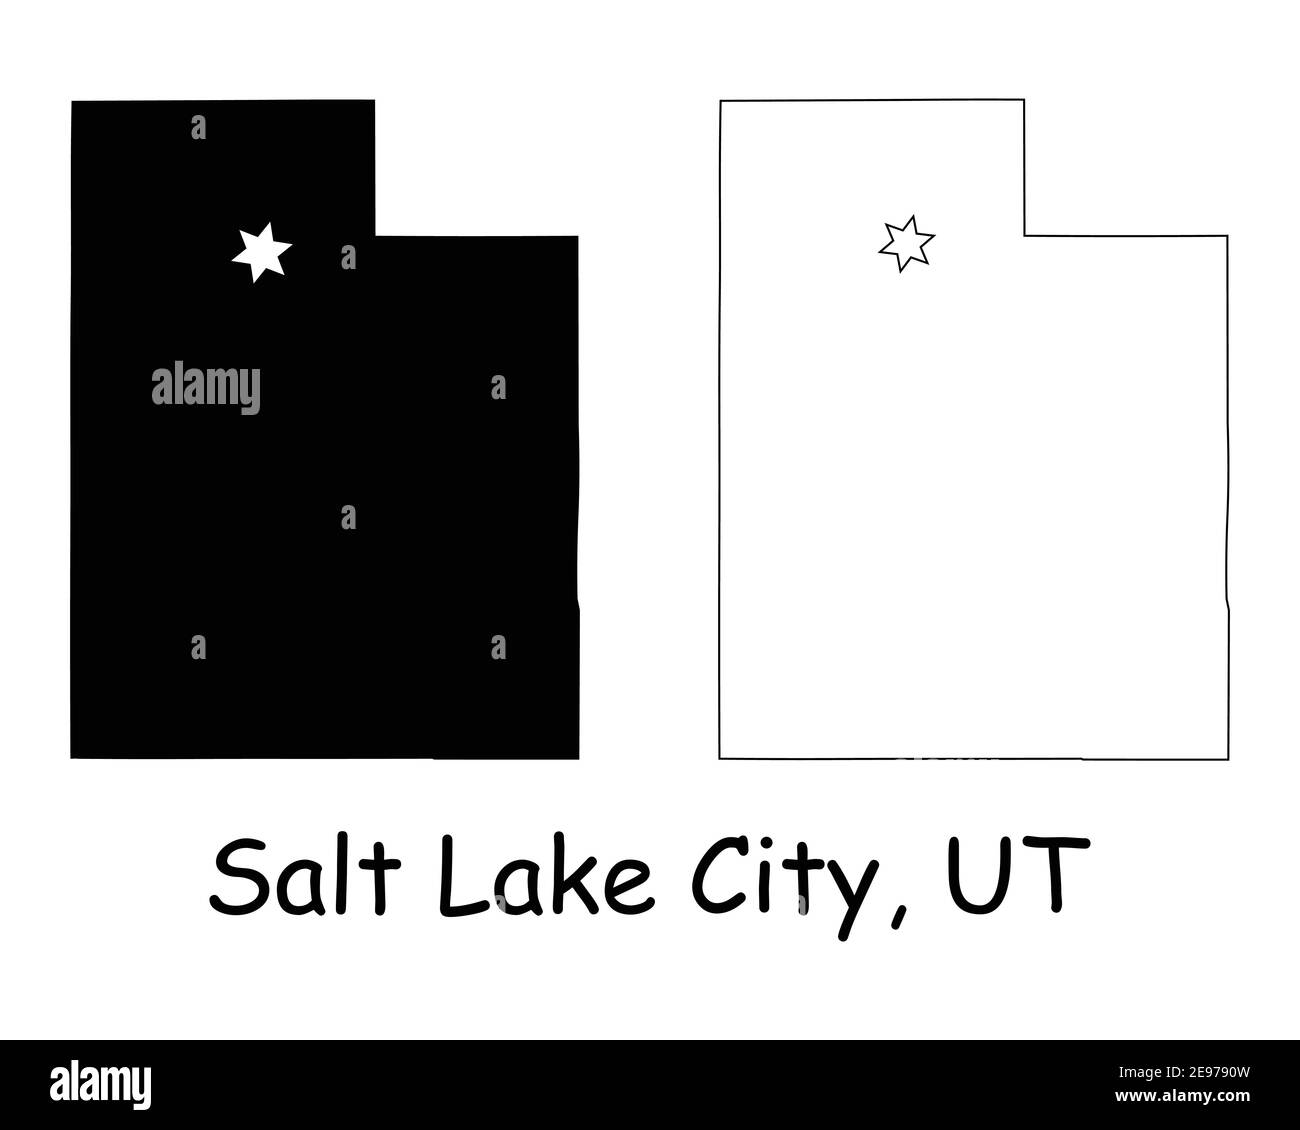 Utah UT state Map USA con Capital City Star a Salt Lake City. Silhouette nera e mappe isolate su sfondo bianco. Vettore EPS Illustrazione Vettoriale